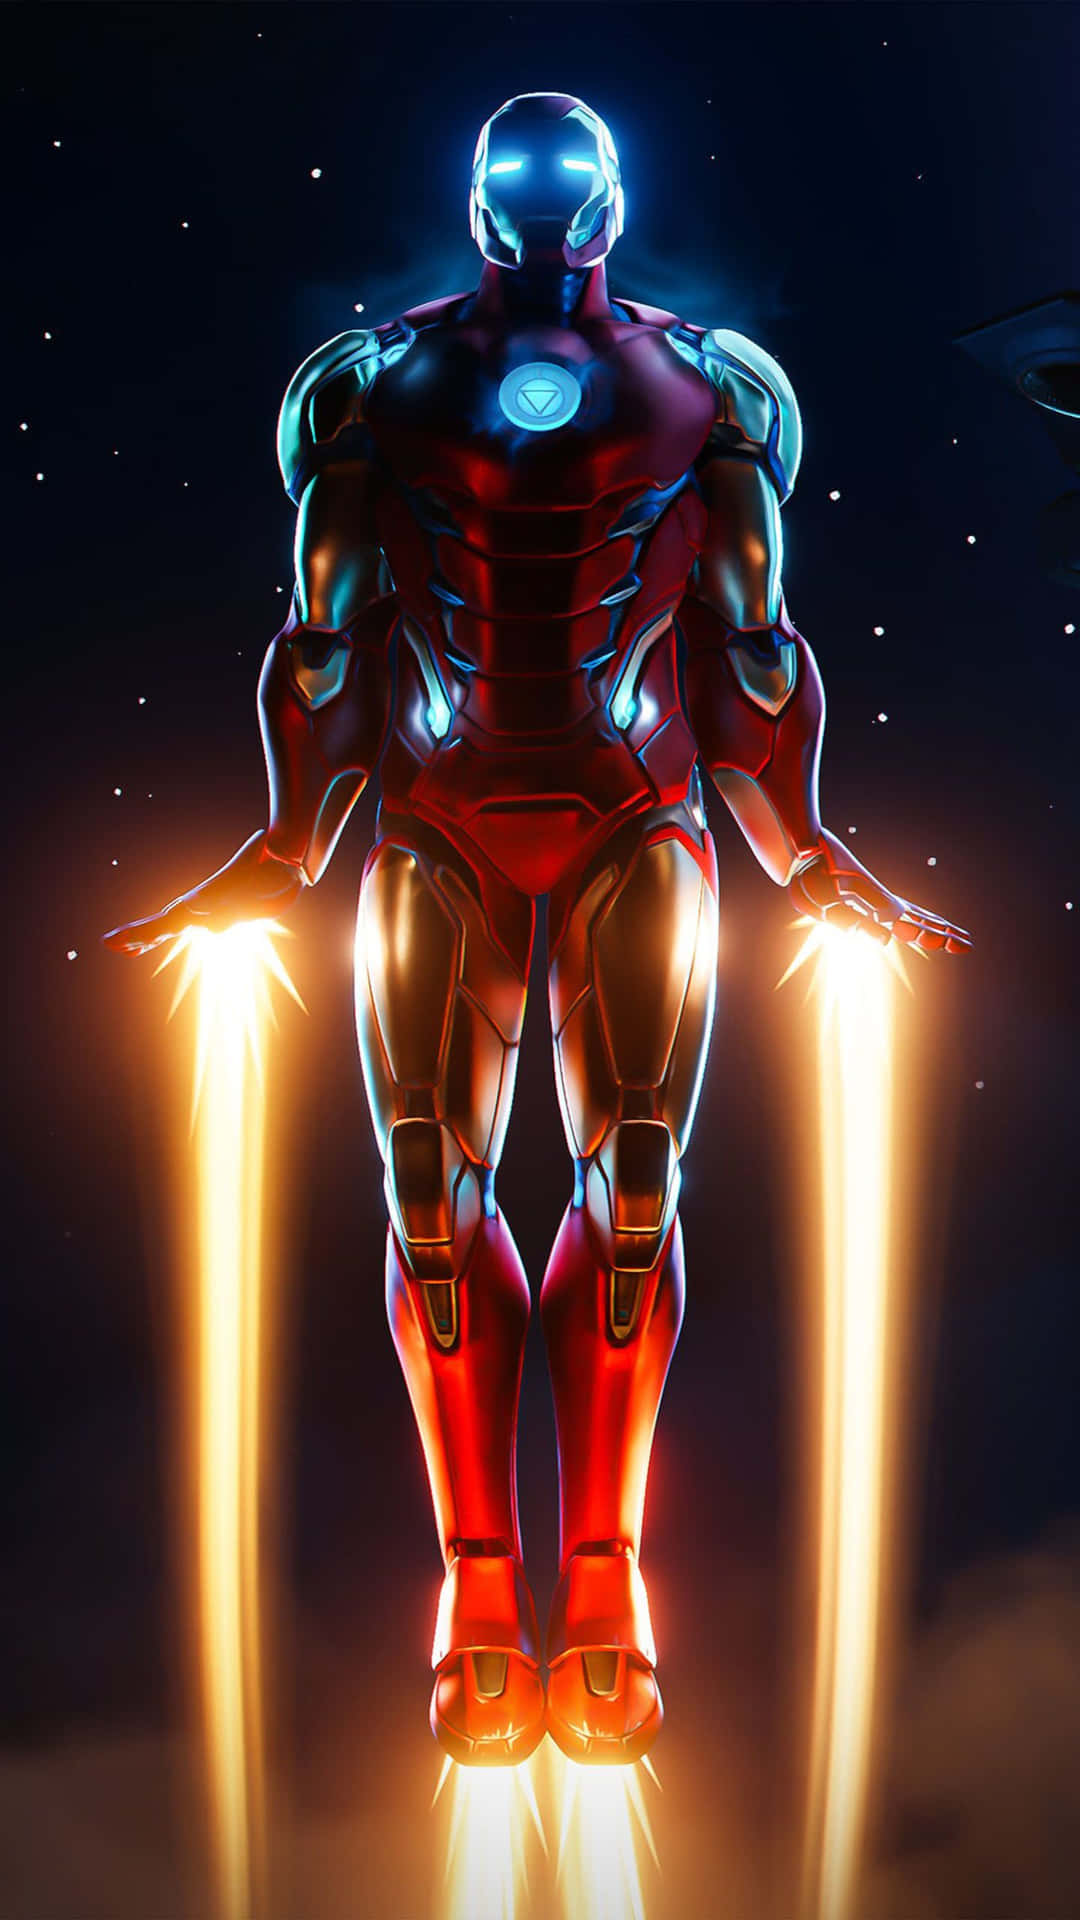 Imagende Iron Man Volando En El Cielo Estrellado